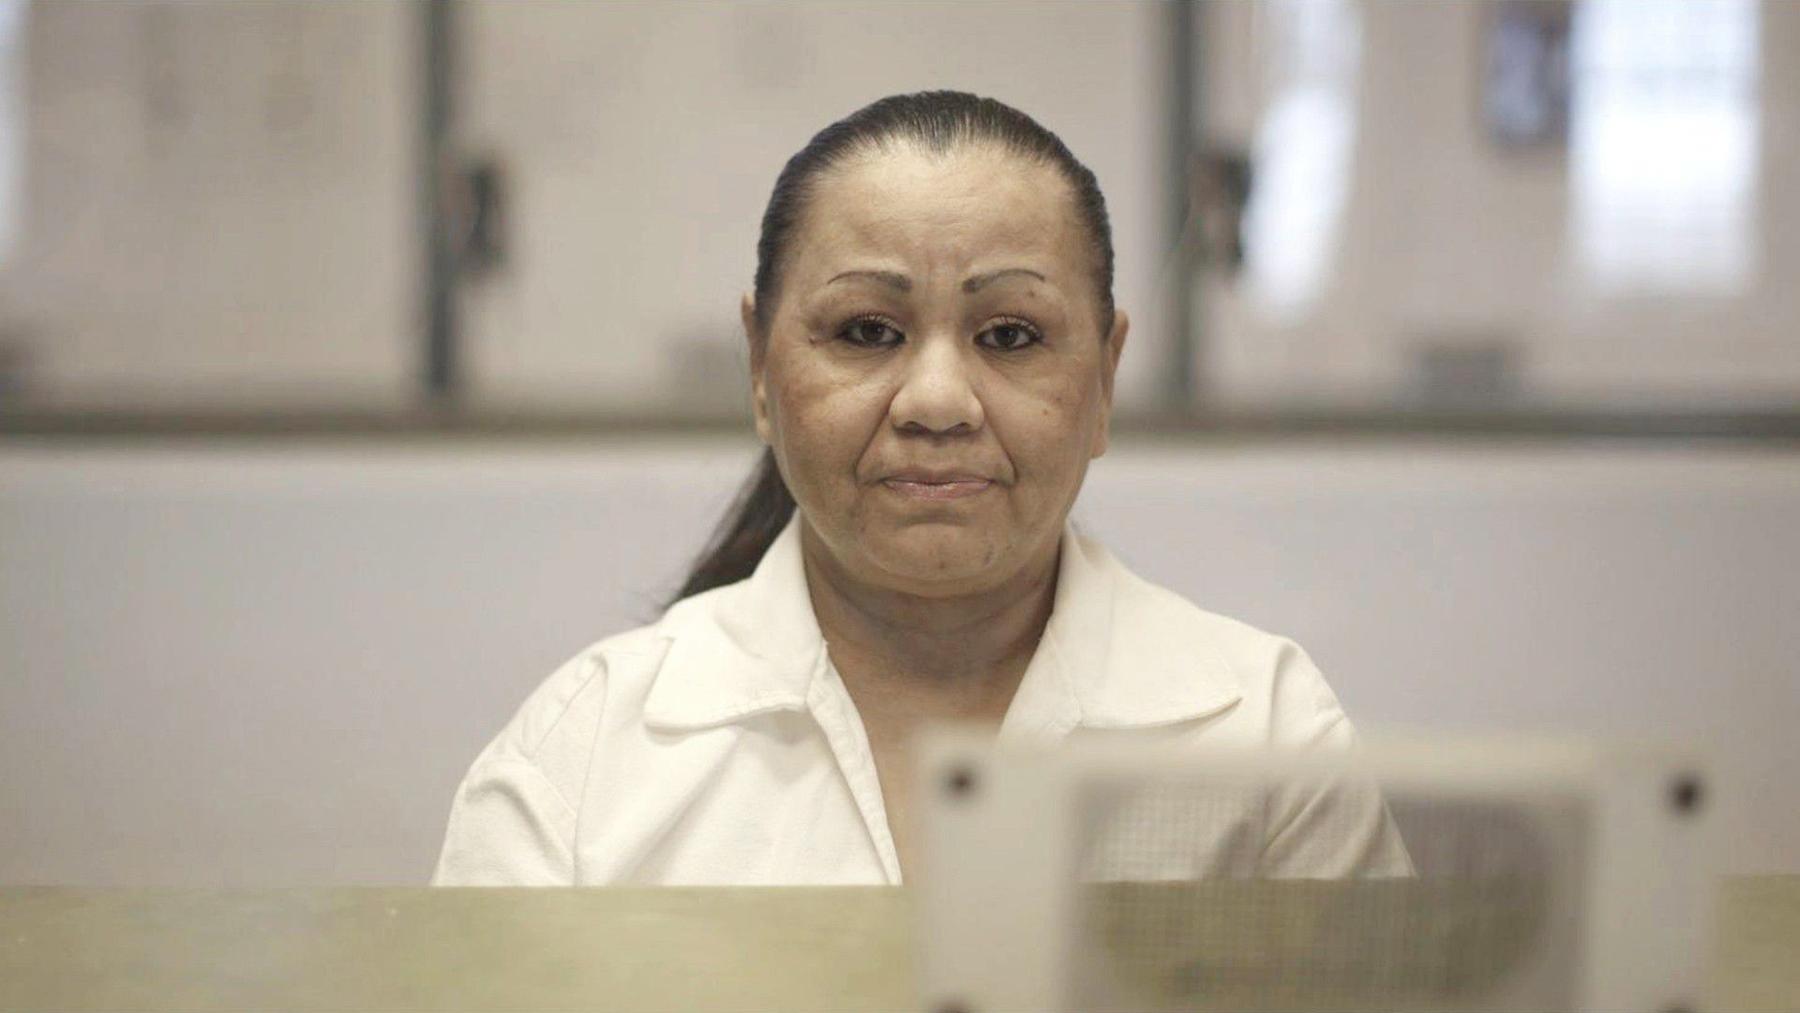 Der Fall Melissa - Rassismus und die Todesstrafe